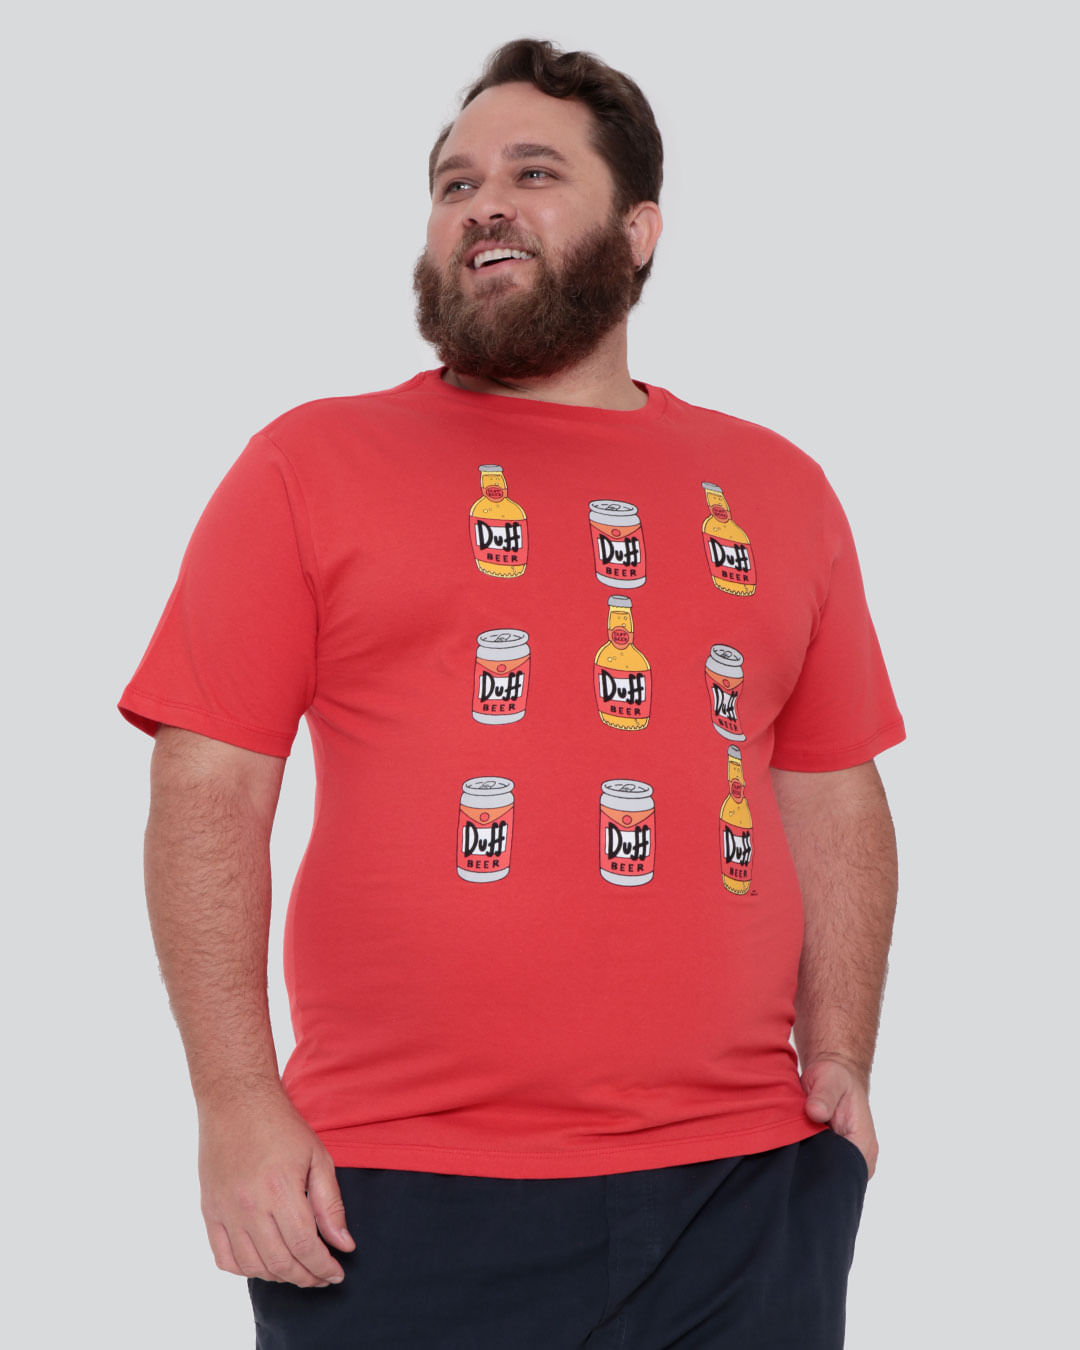 Camiseta-Plus-Size-Masculina-Estampa-Duff-Beer-Simpsons-Vermelha